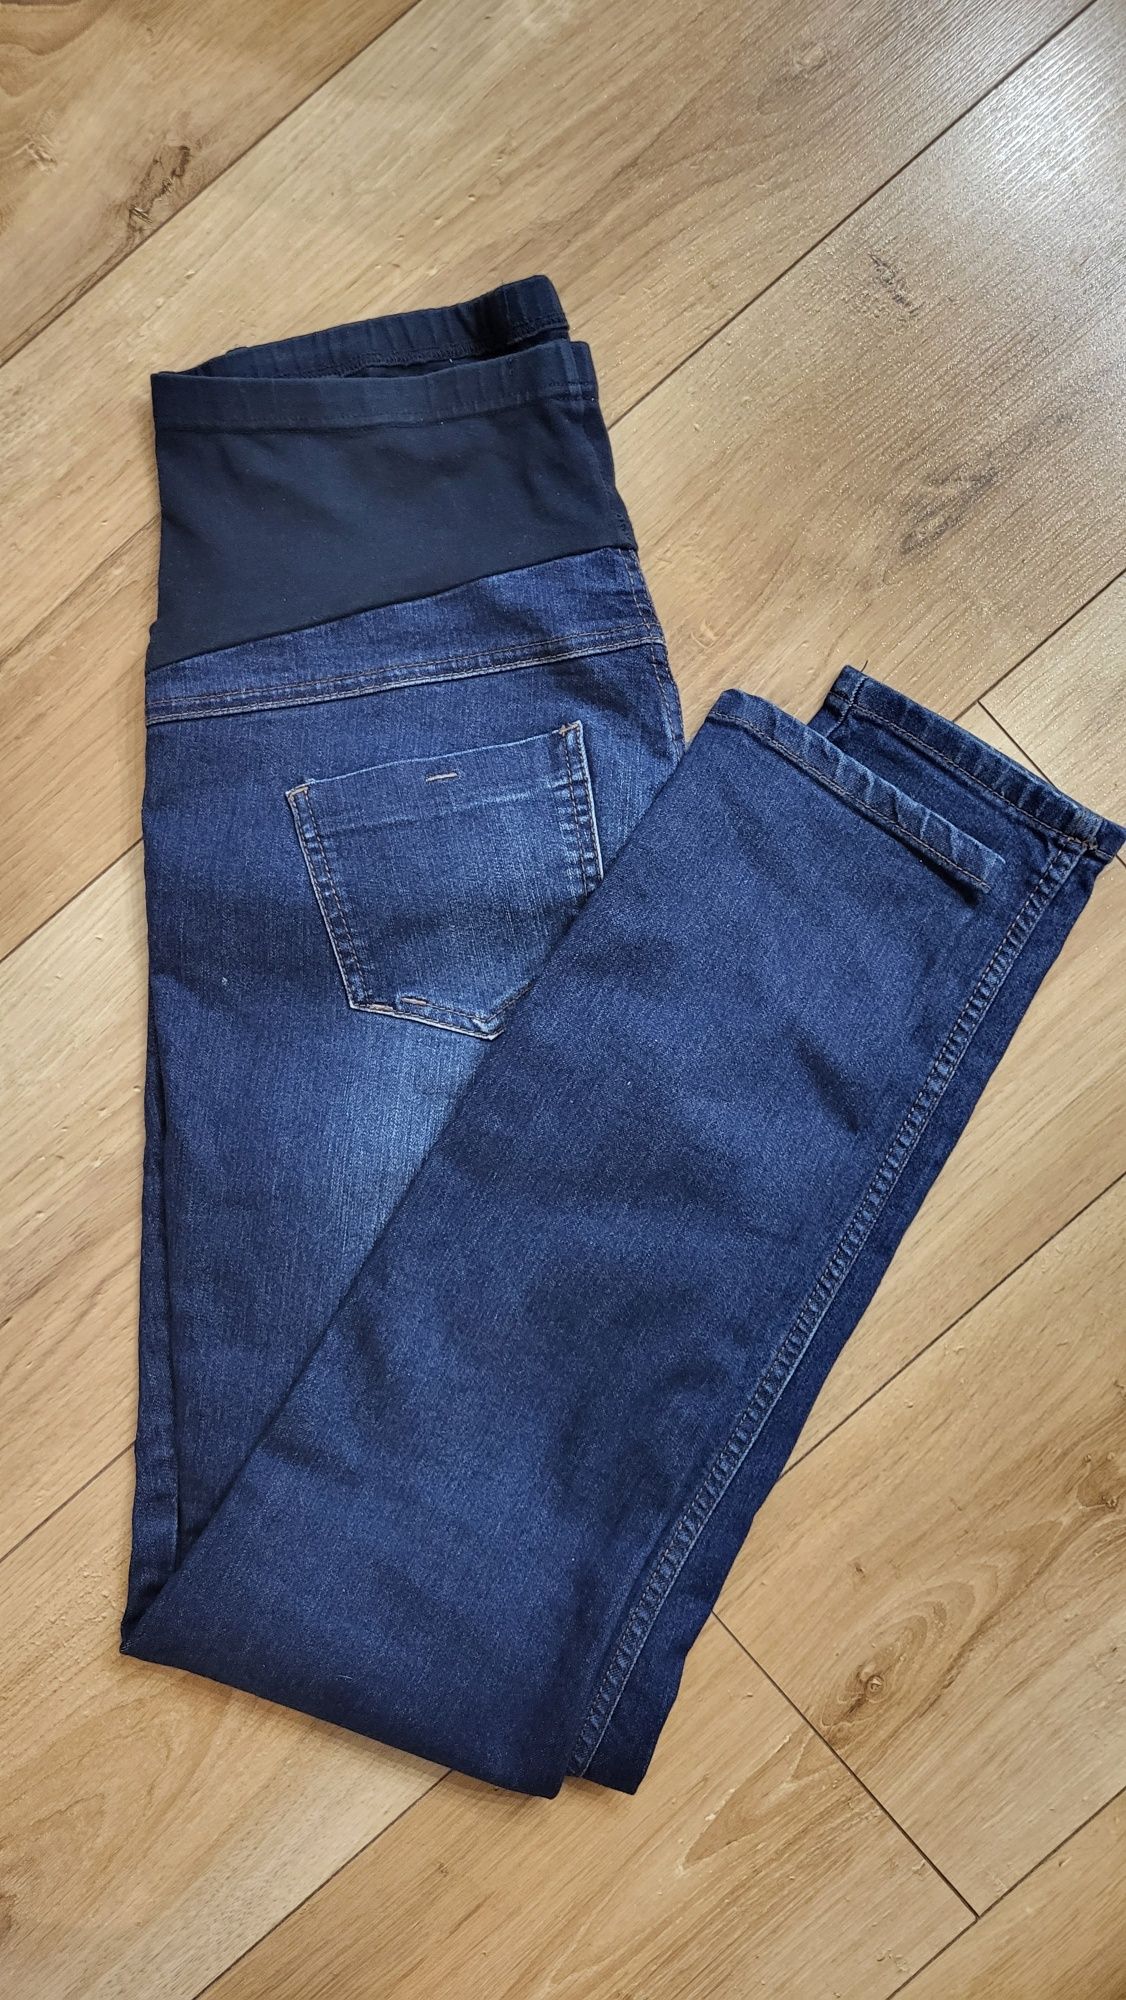 Spodnie ciążowe jeans dżins, George, r. 38/M